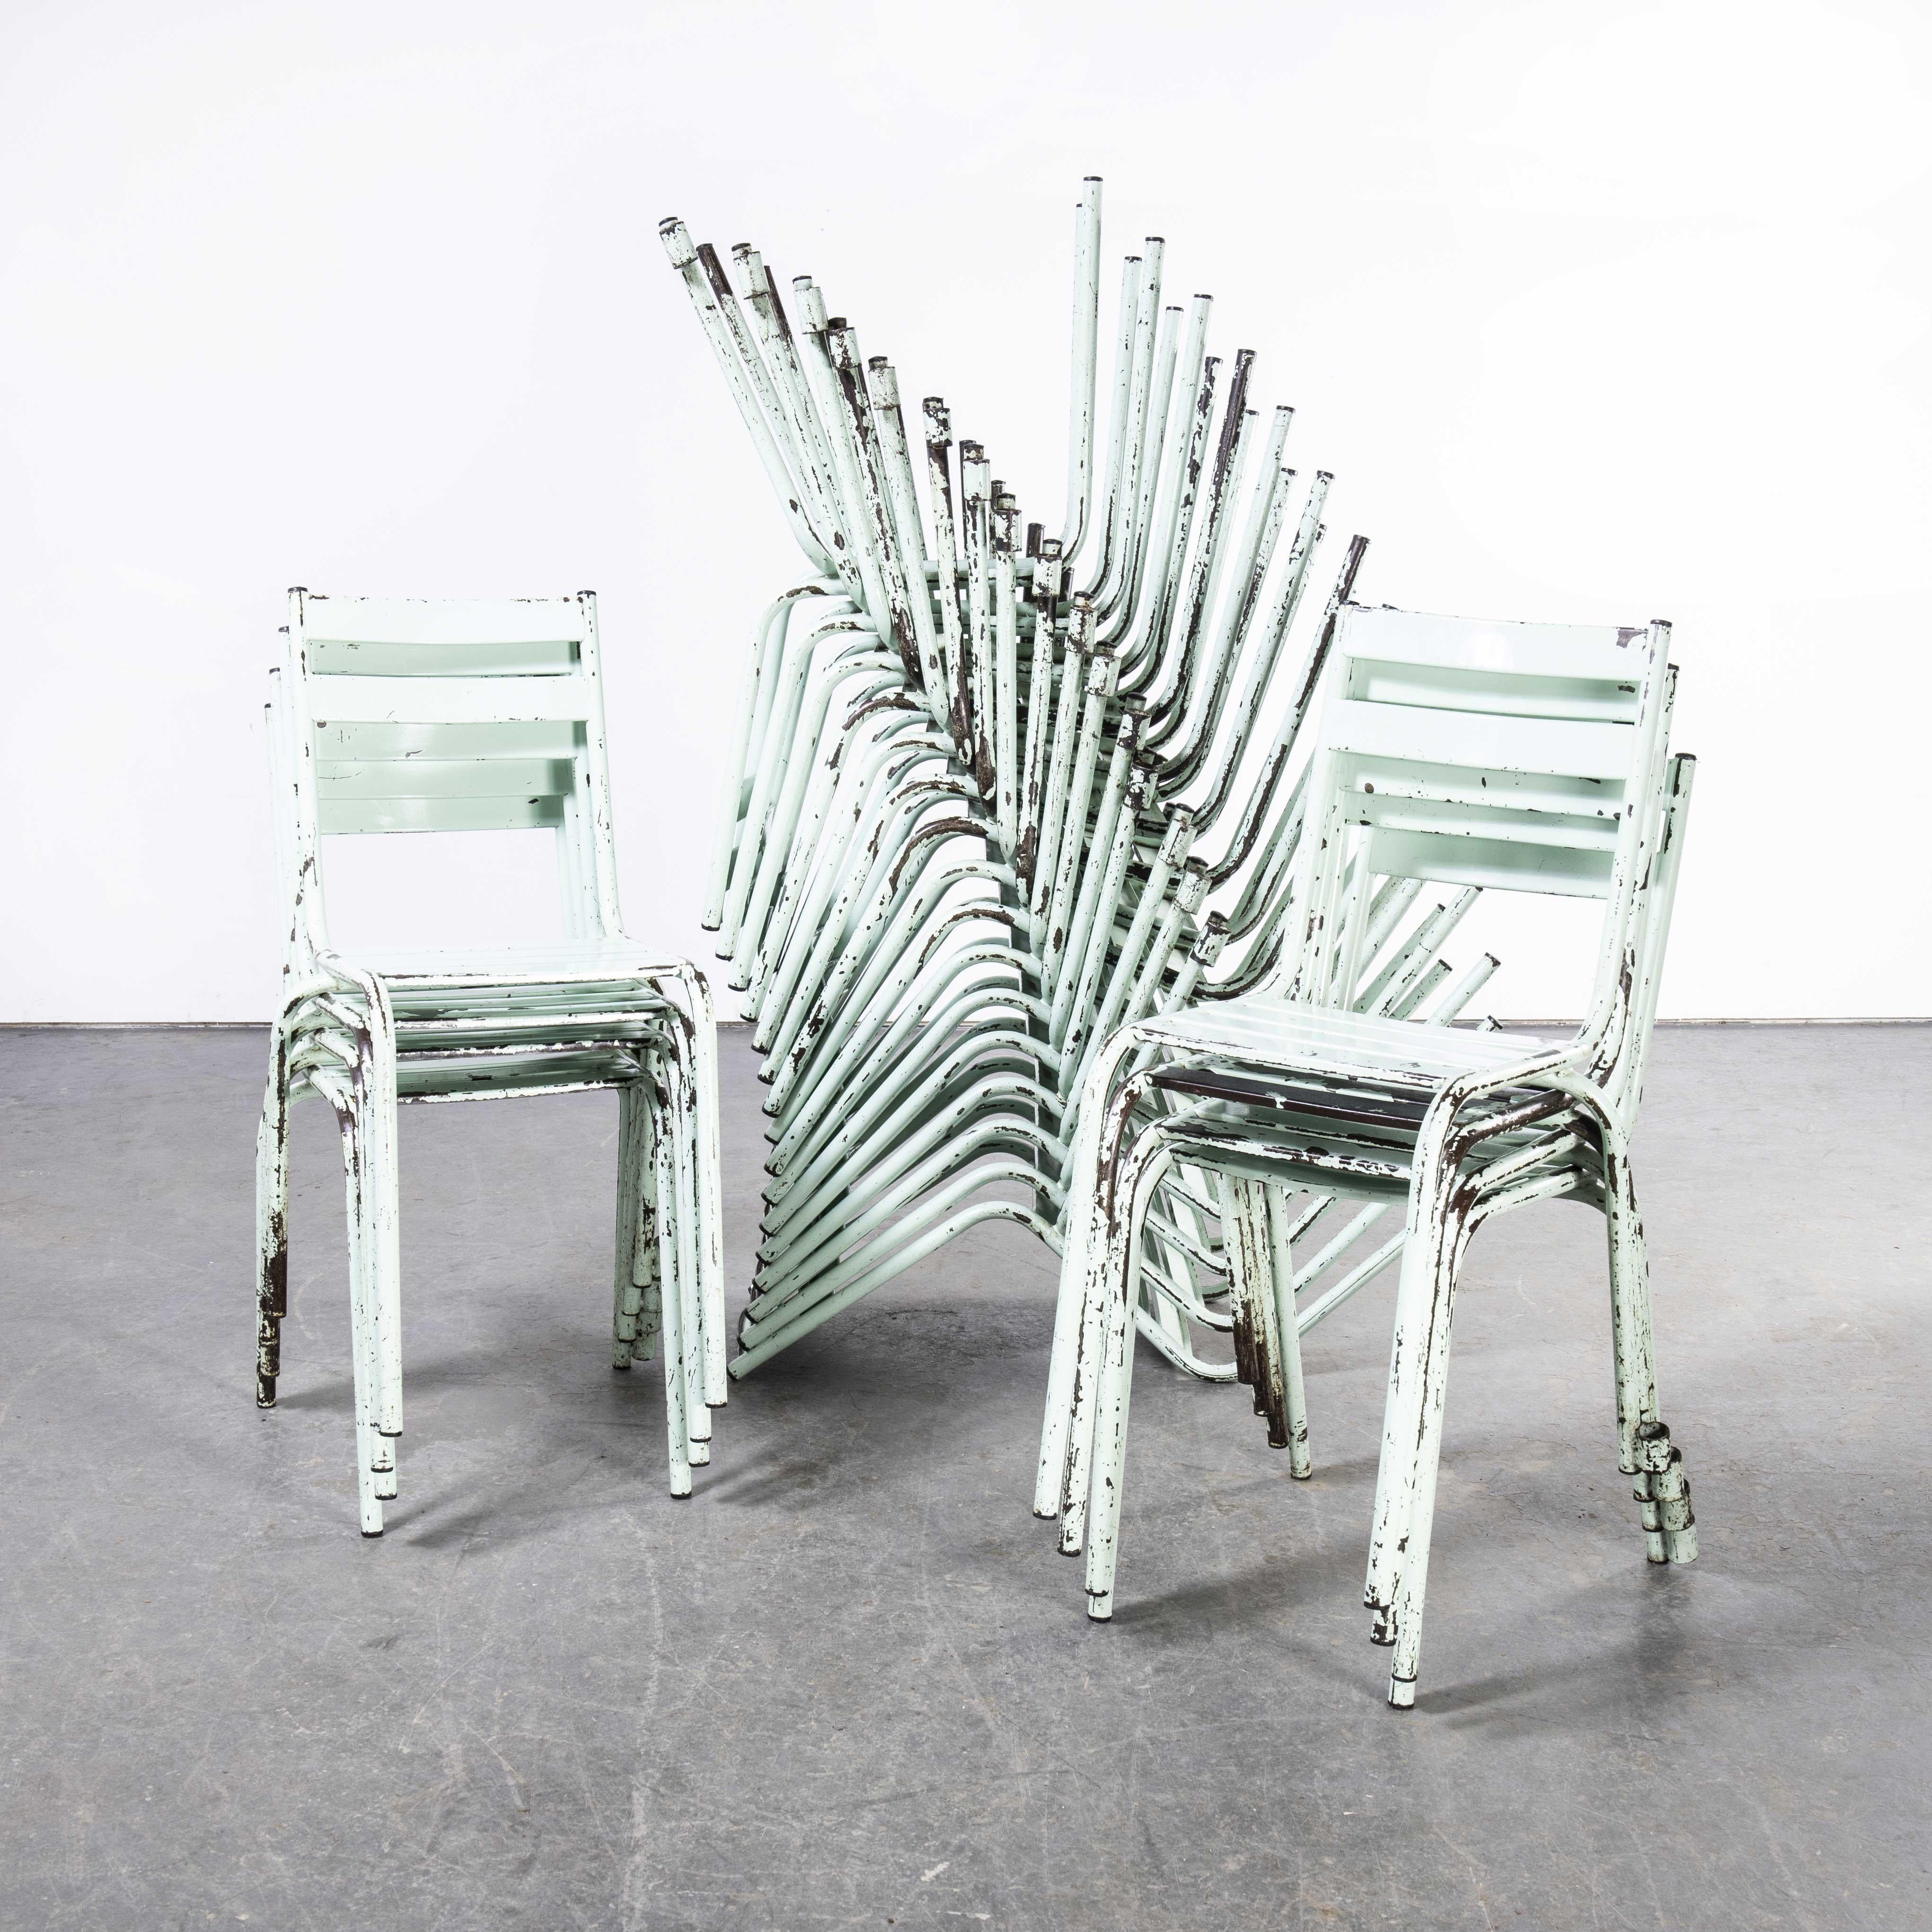 1950's French ArtProg mint metal stacking outdoor chairs - verschiedene Mengen verfügbar
1950's French ArtProg mint metal stacking outdoor chairs - verschiedene Mengen verfügbar. ArtProg, das an Tolix erinnert, aber nicht von Tolix hergestellt